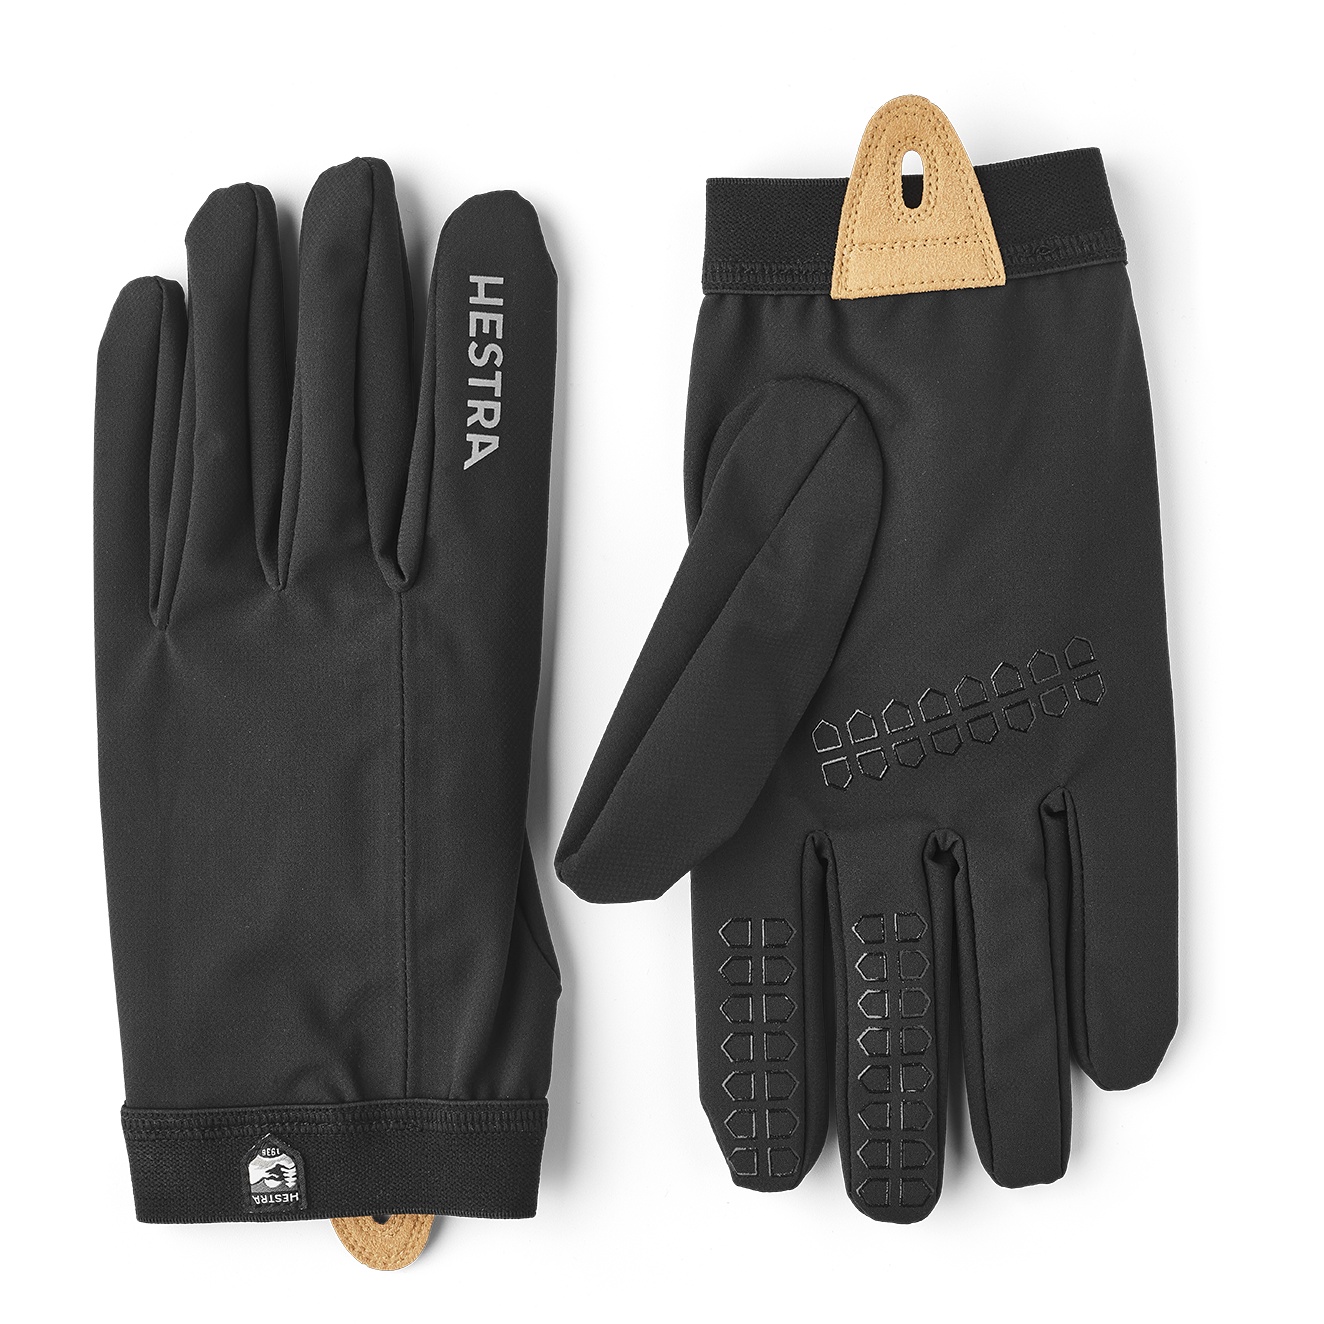 Productfoto van Hestra Nimbus - 5 Vinger Handschoenen - black/black